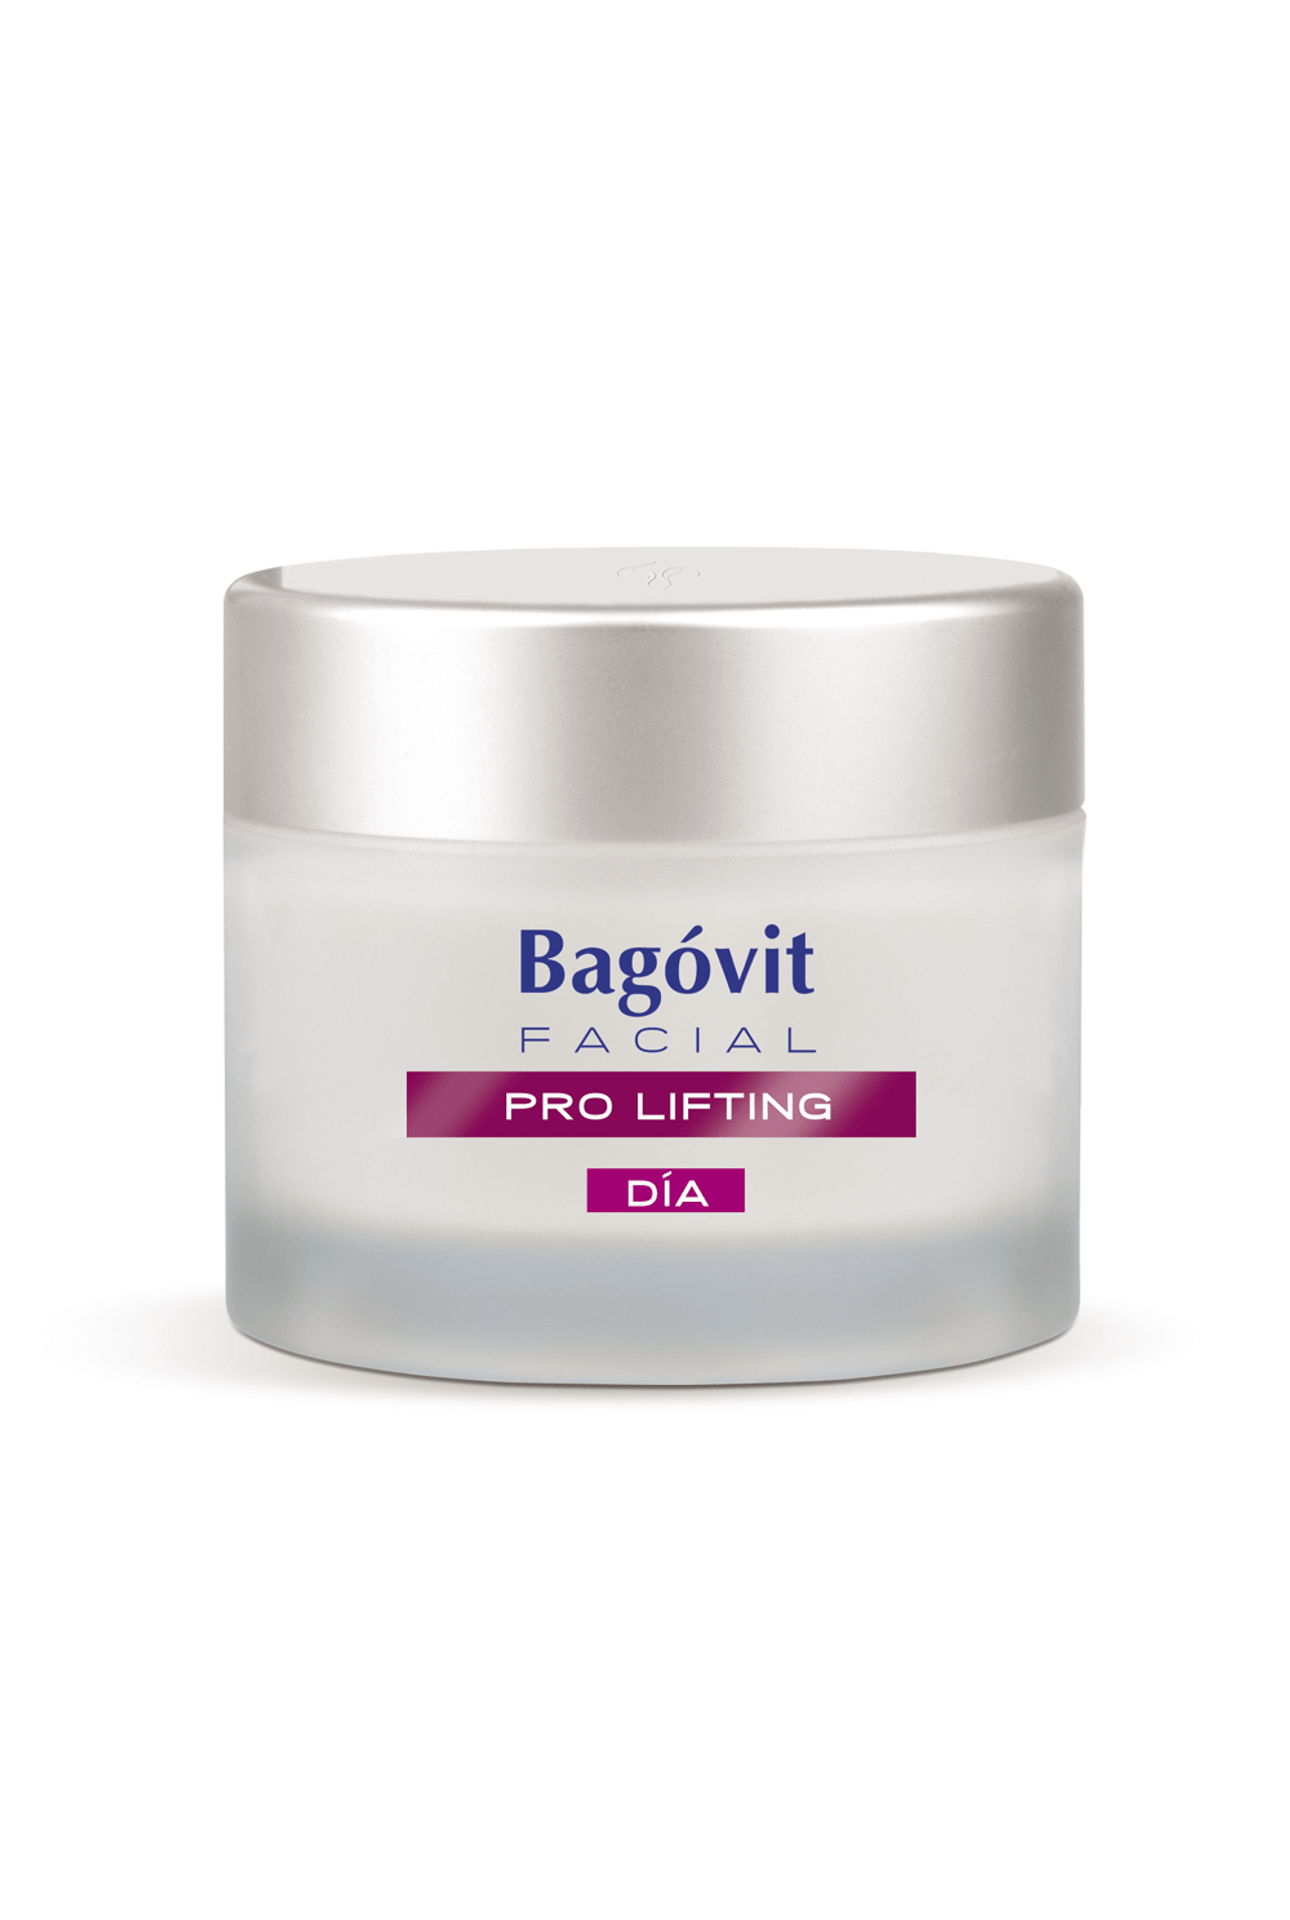 Bagovit-Pro Lifting Crema Facial de Día Piel Seca x 55 gr-7790375268695